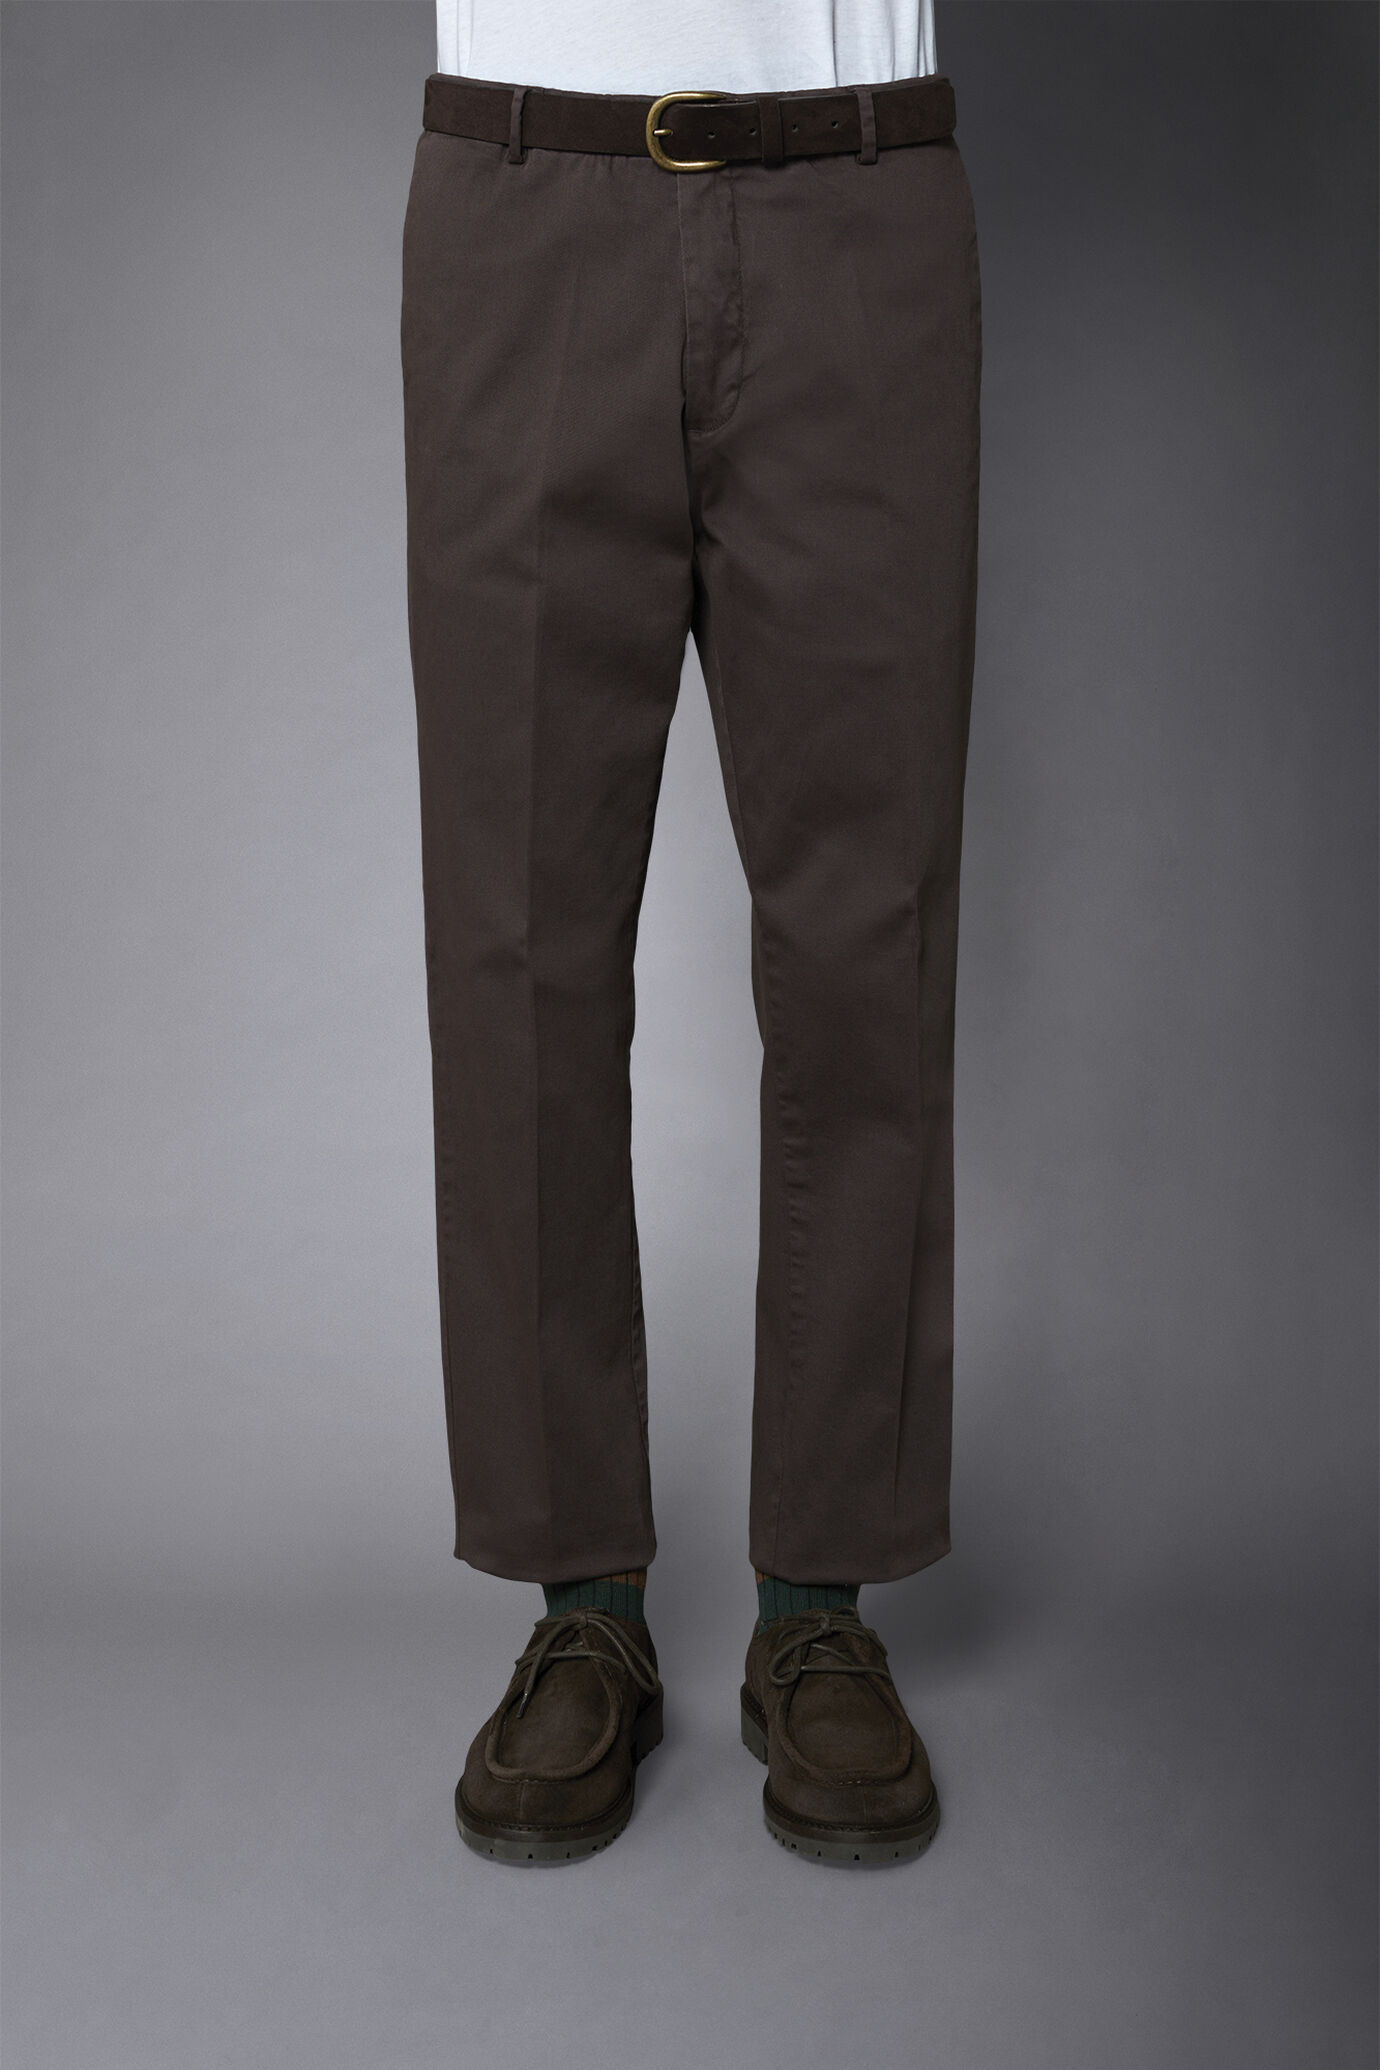 Pantalone chino uomo classico costruzione twill regular fit image number 3